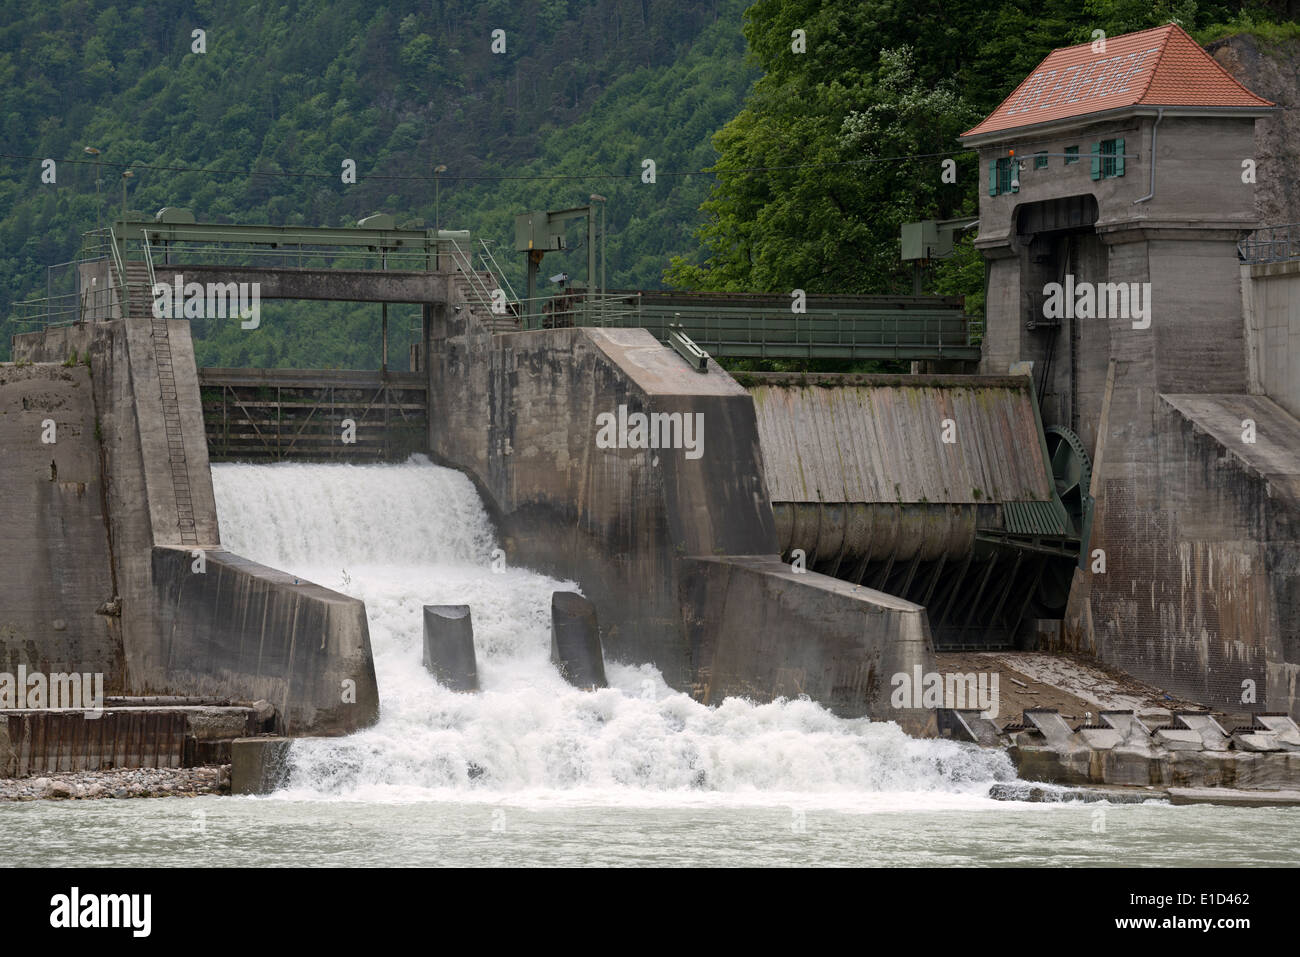 Central hidroeléctrica de propiedad de DB Energie parte de Ferrocarriles Alemanes para producir electricidad para alimentar los trenes Foto de stock